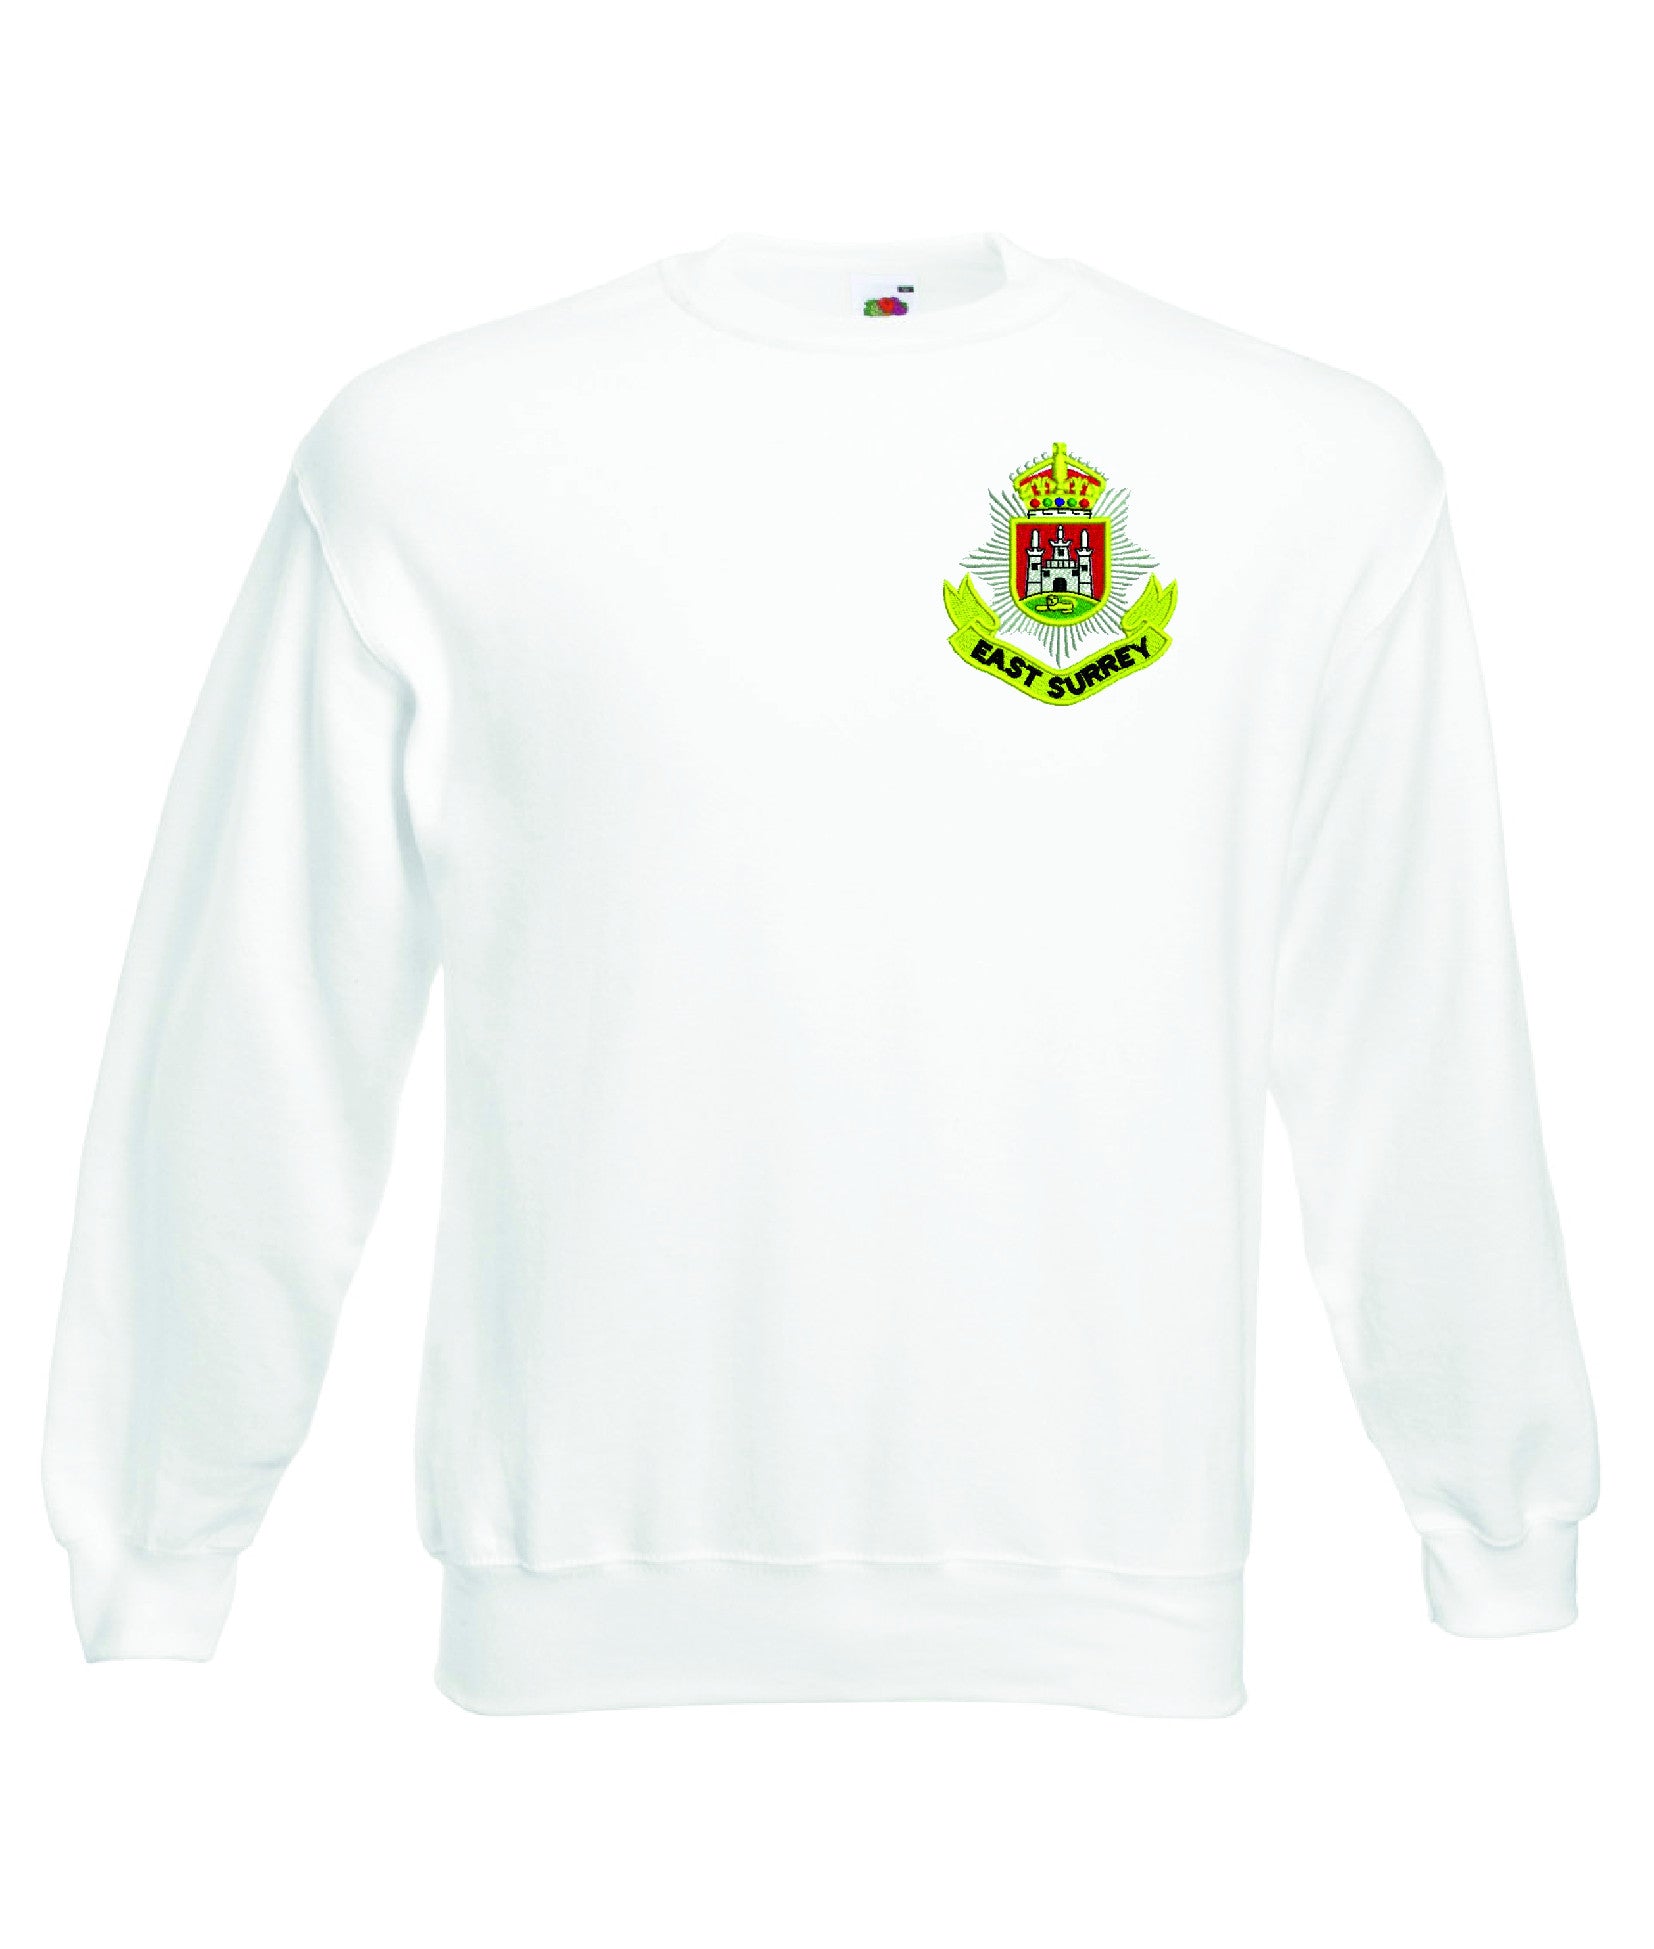 East Surrey Regiment Sweatshirt